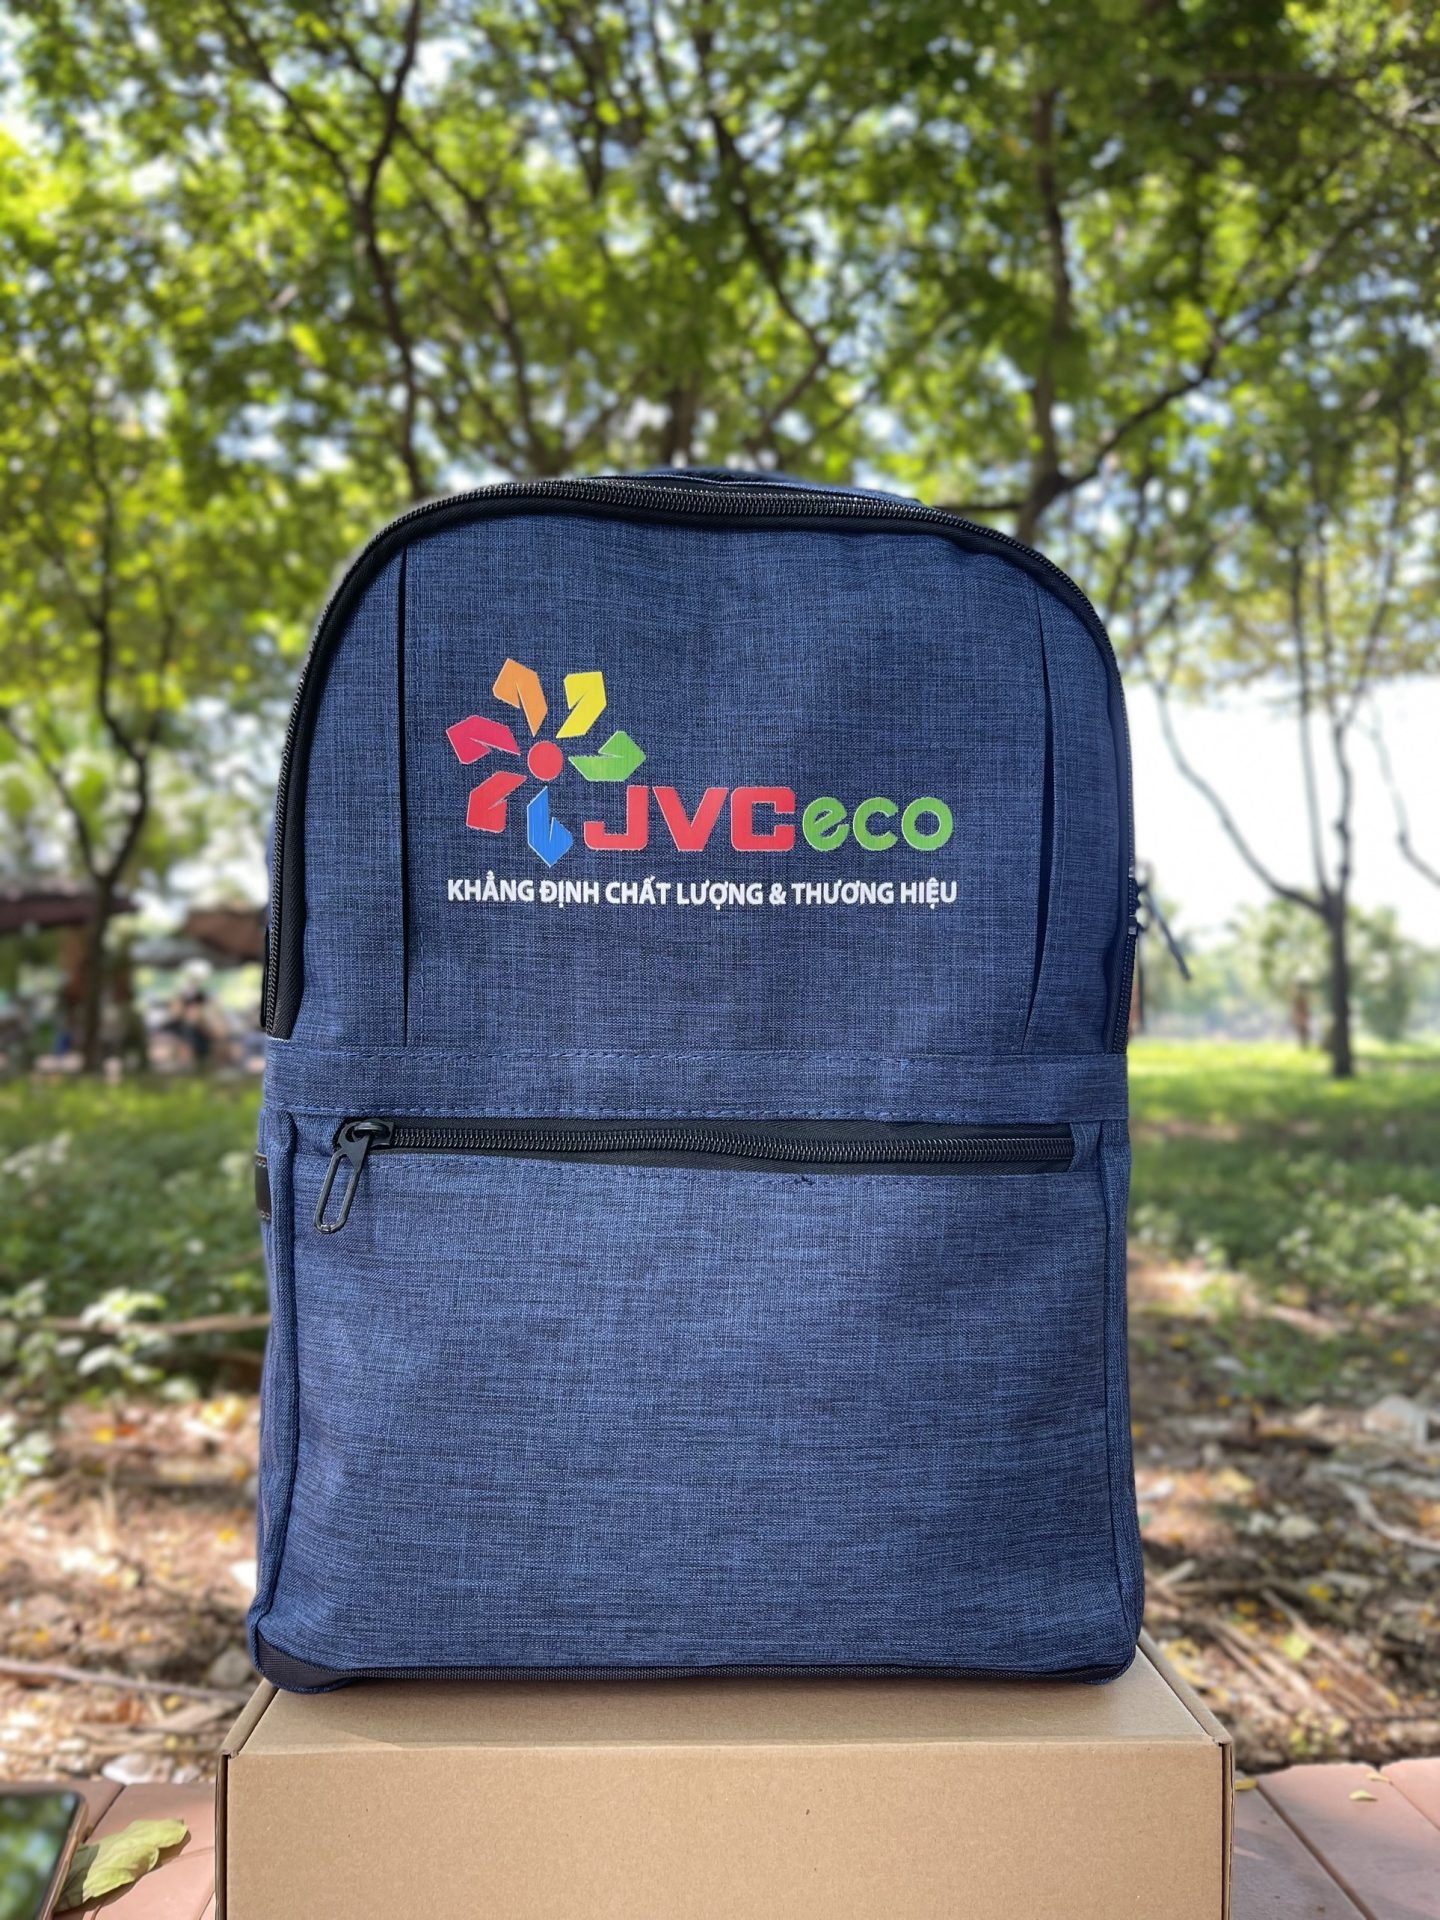 Balo in ấn logo JVC Eco Quà tặng công nghệ doanh nghiệp